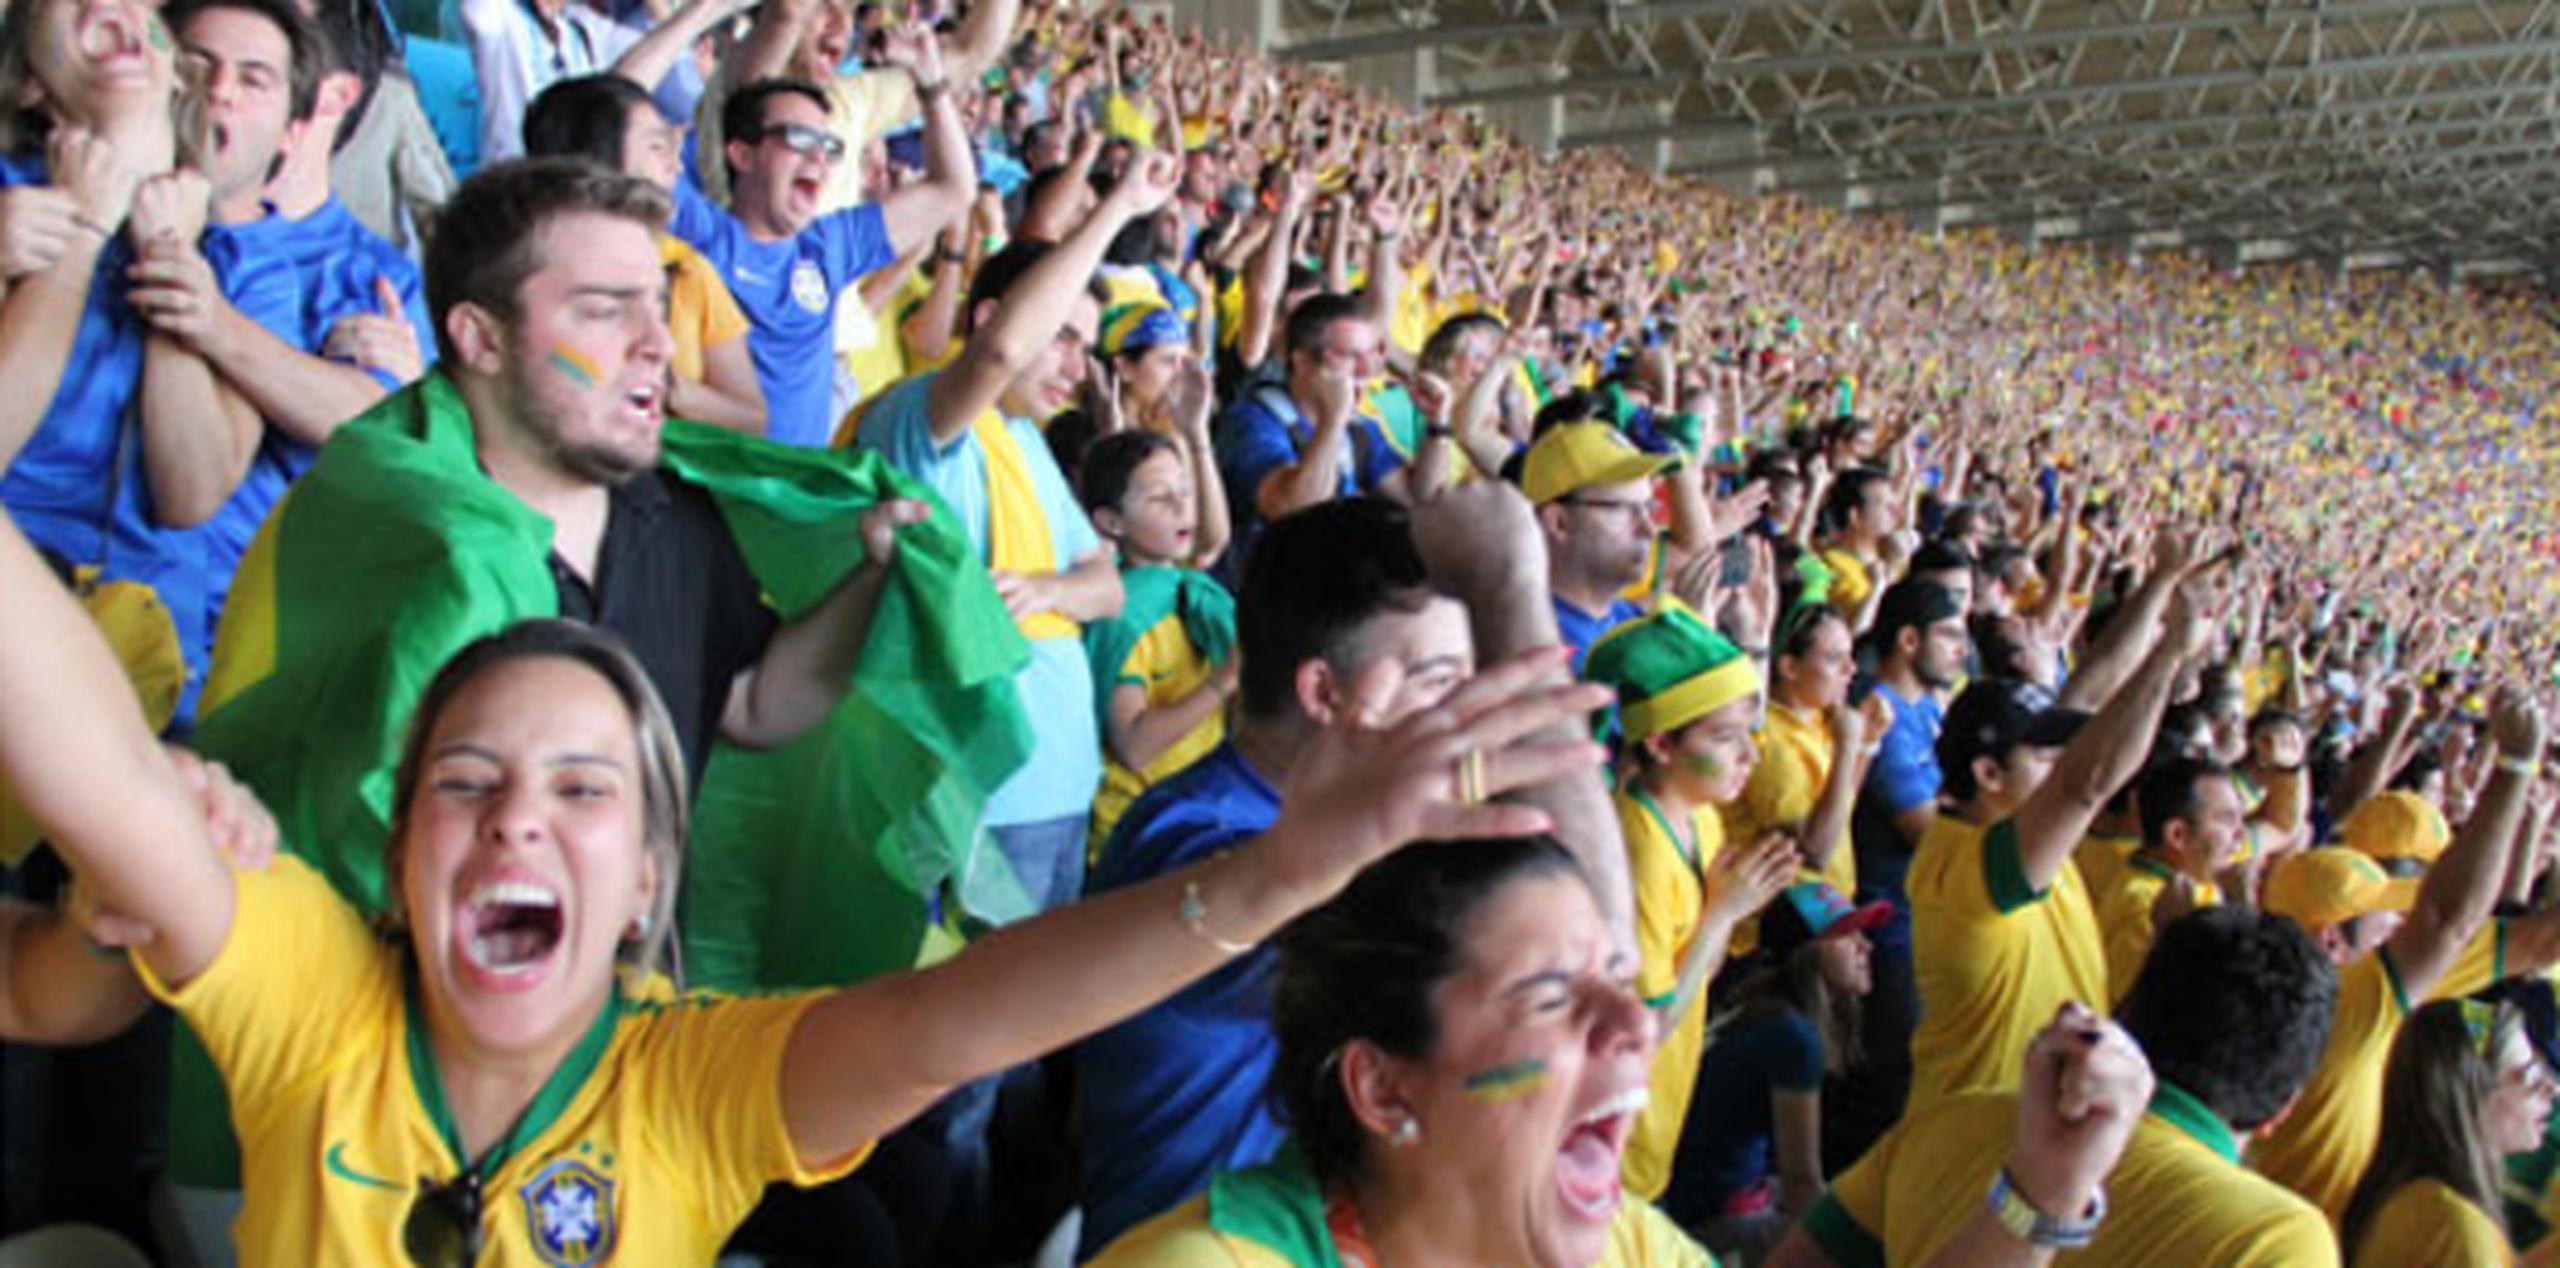 Partido de octavos de final de la Copa Mundial de 2014 en Belo Horizonte, entre Brasil y Chile. (alex.figueroa@gfrmedia.com)